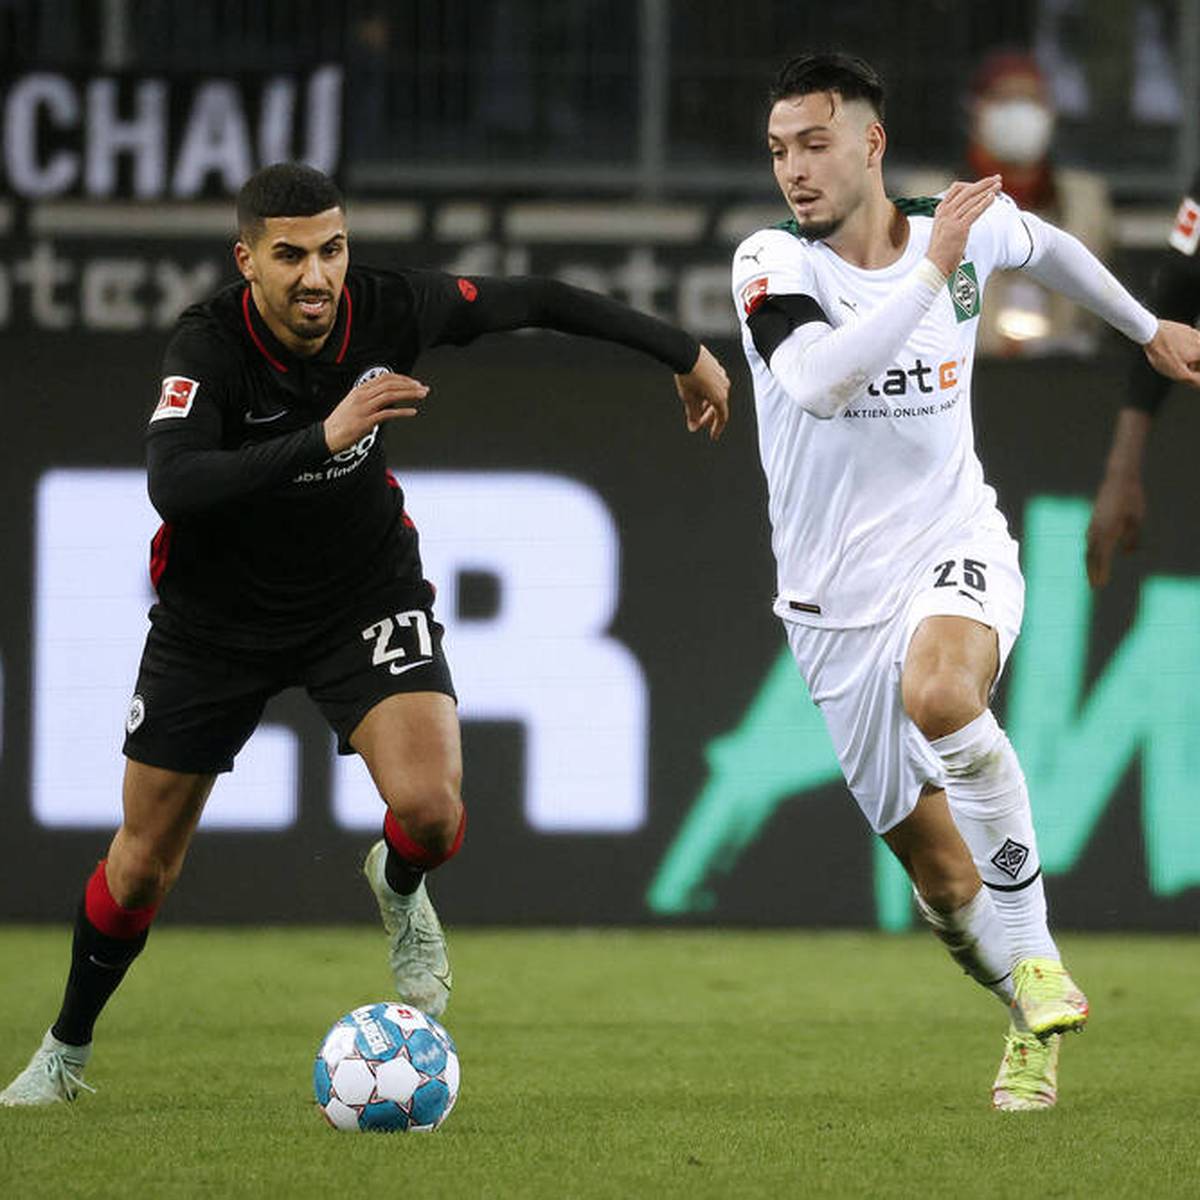 Der Vertrag von Aymen Barkok läuft im Sommer aus und wird nicht mehr verlängert. Das Eigengewächs von Eintracht Frankfurt bleibt der Bundesliga aber erhalten – und steht vor einem ablösefreien Wechsel zum Lokalrivalen Mainz 05!